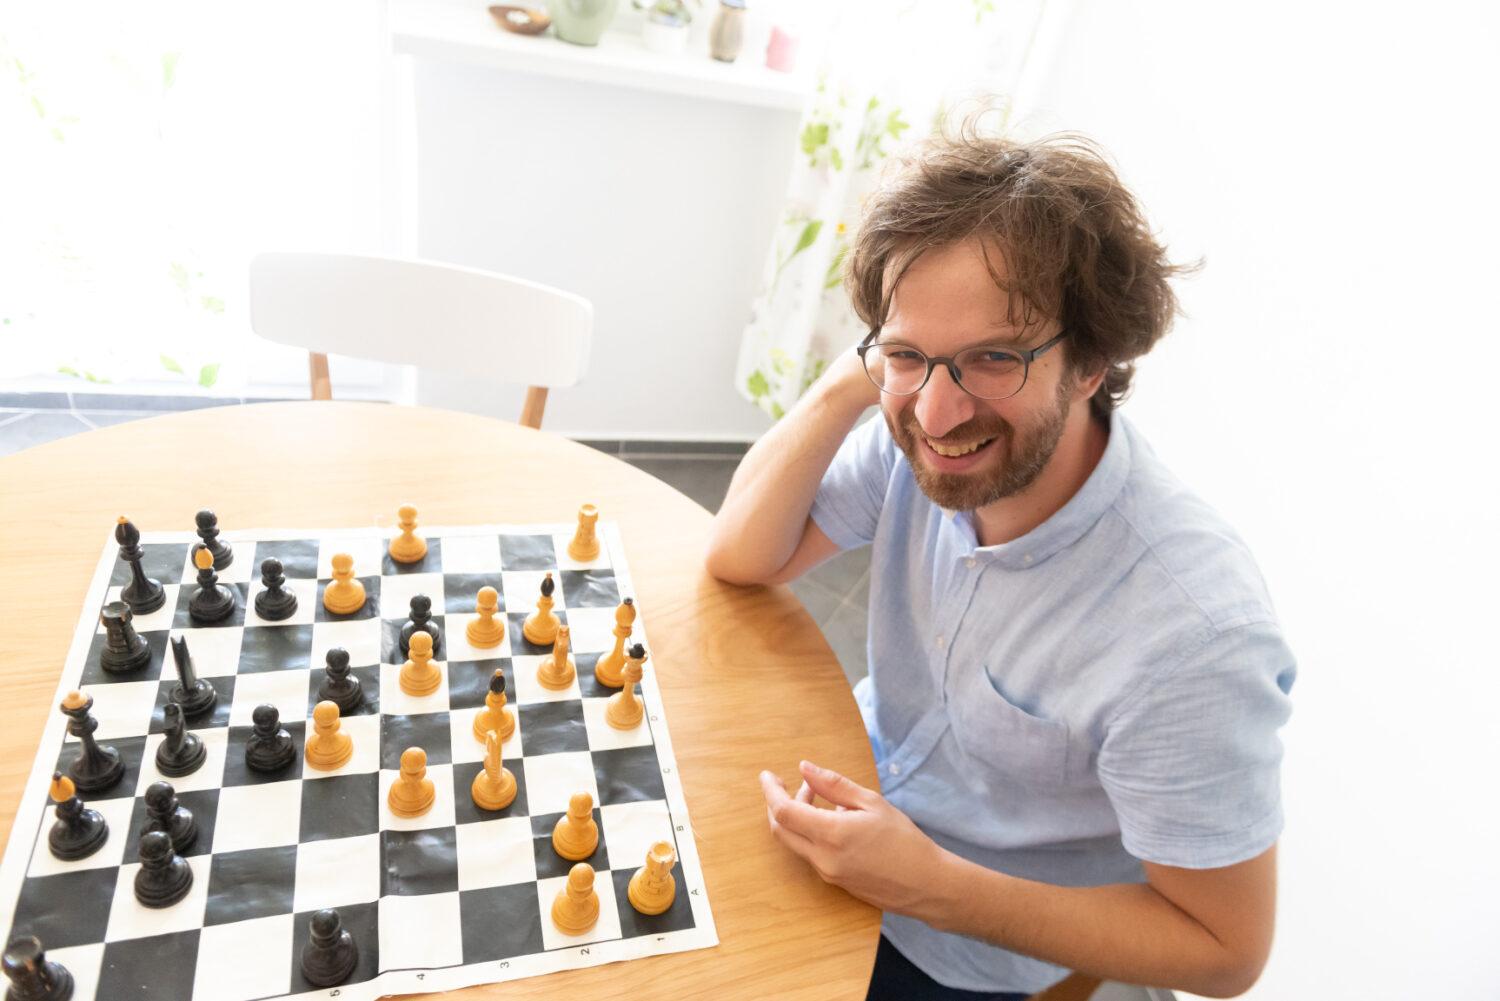 Šachový veľmajster Ján Markoš: Neuzatvárajme sa pred druhými. Ľudskosť je vždy prvoradá